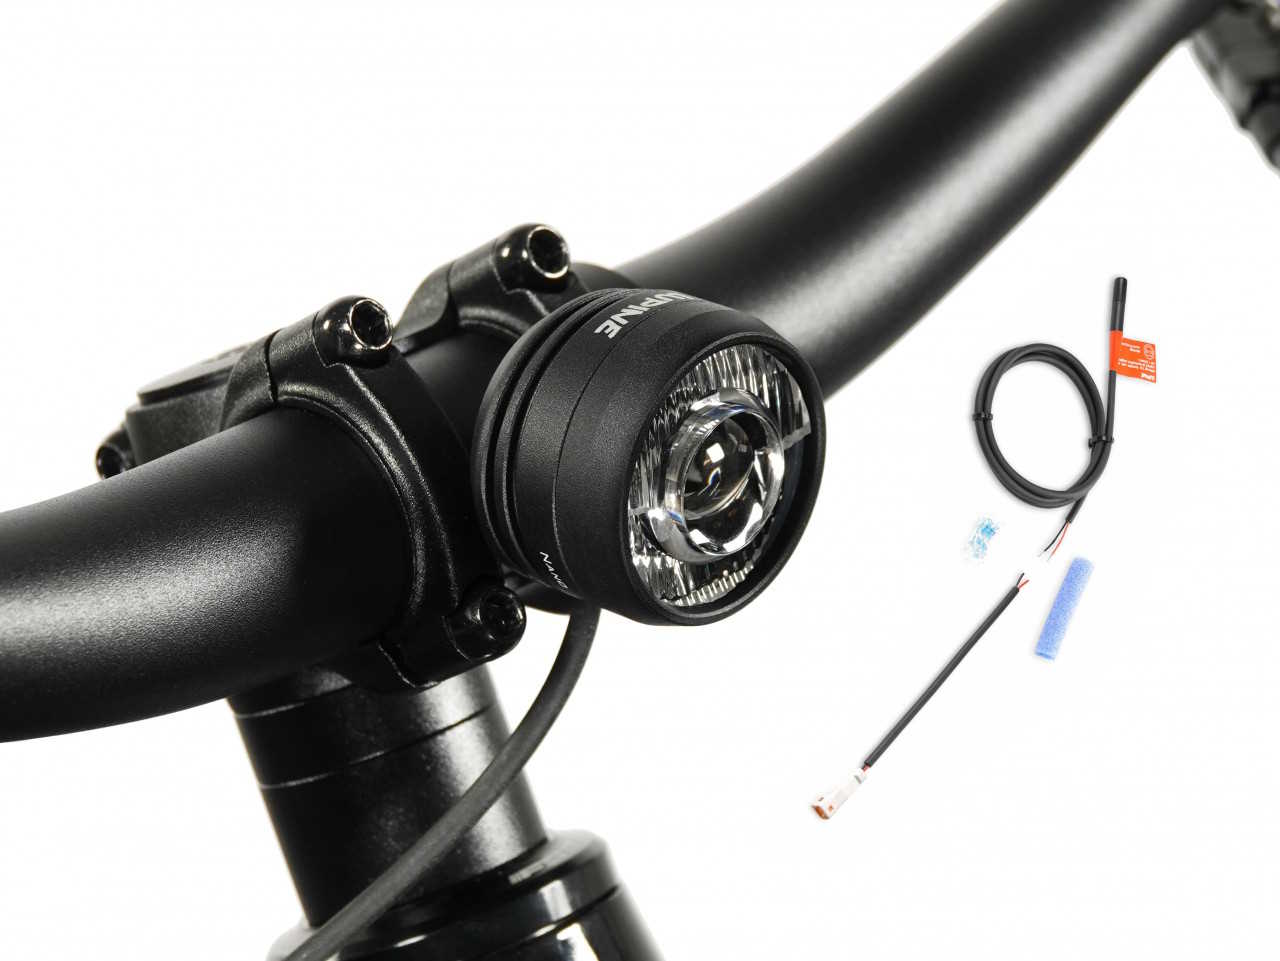 Produktbild von Lupine SL Nano für E-Bikes mit Giant Motor, E-Bike Beleuchtung mit 900 Lumen Fernlicht, Lenkerhalter 35mm + Kabelfernbedienung